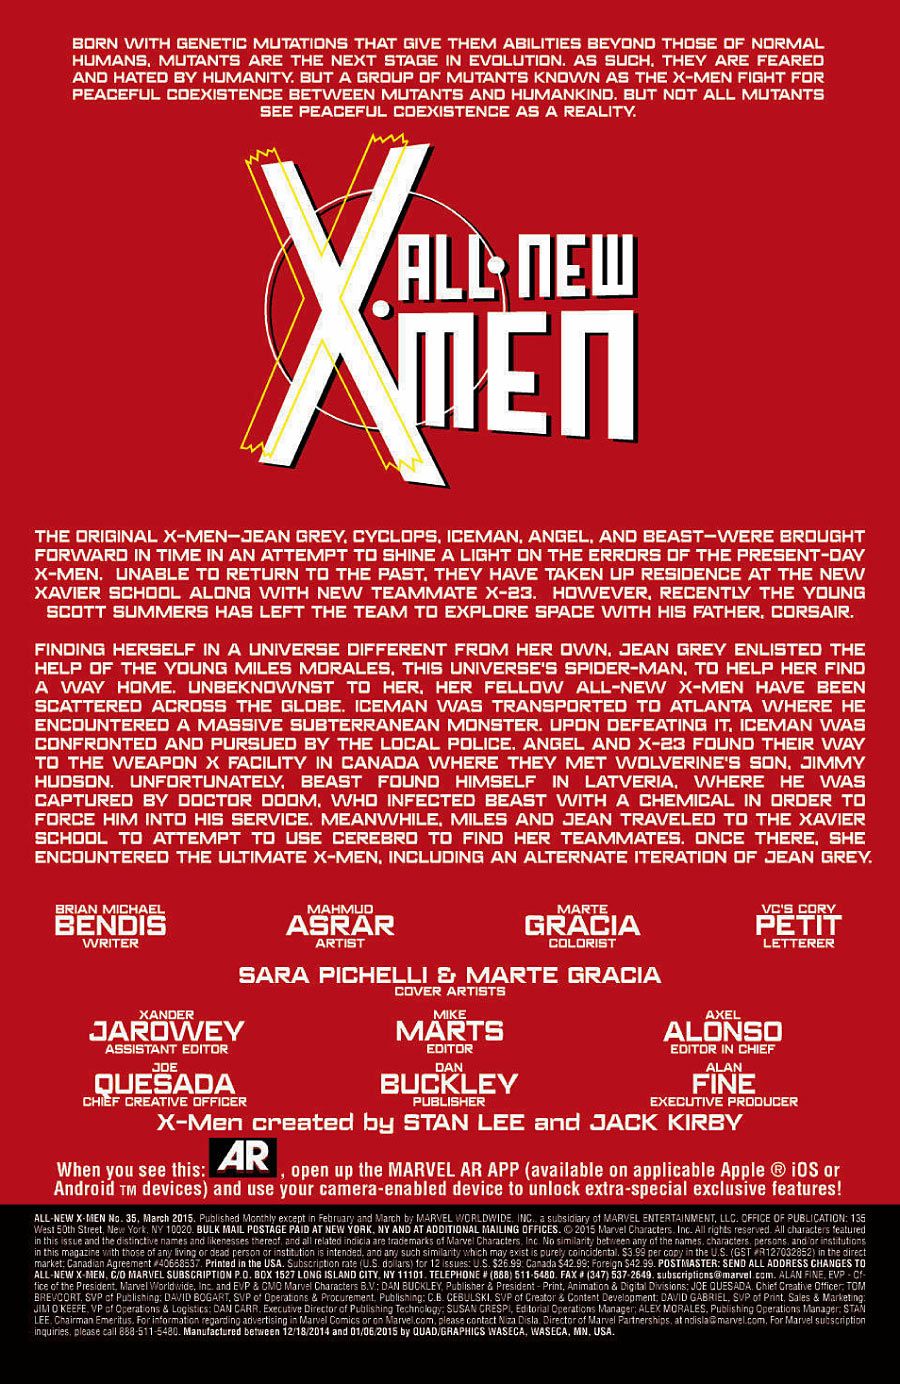  All-New X-Men #35